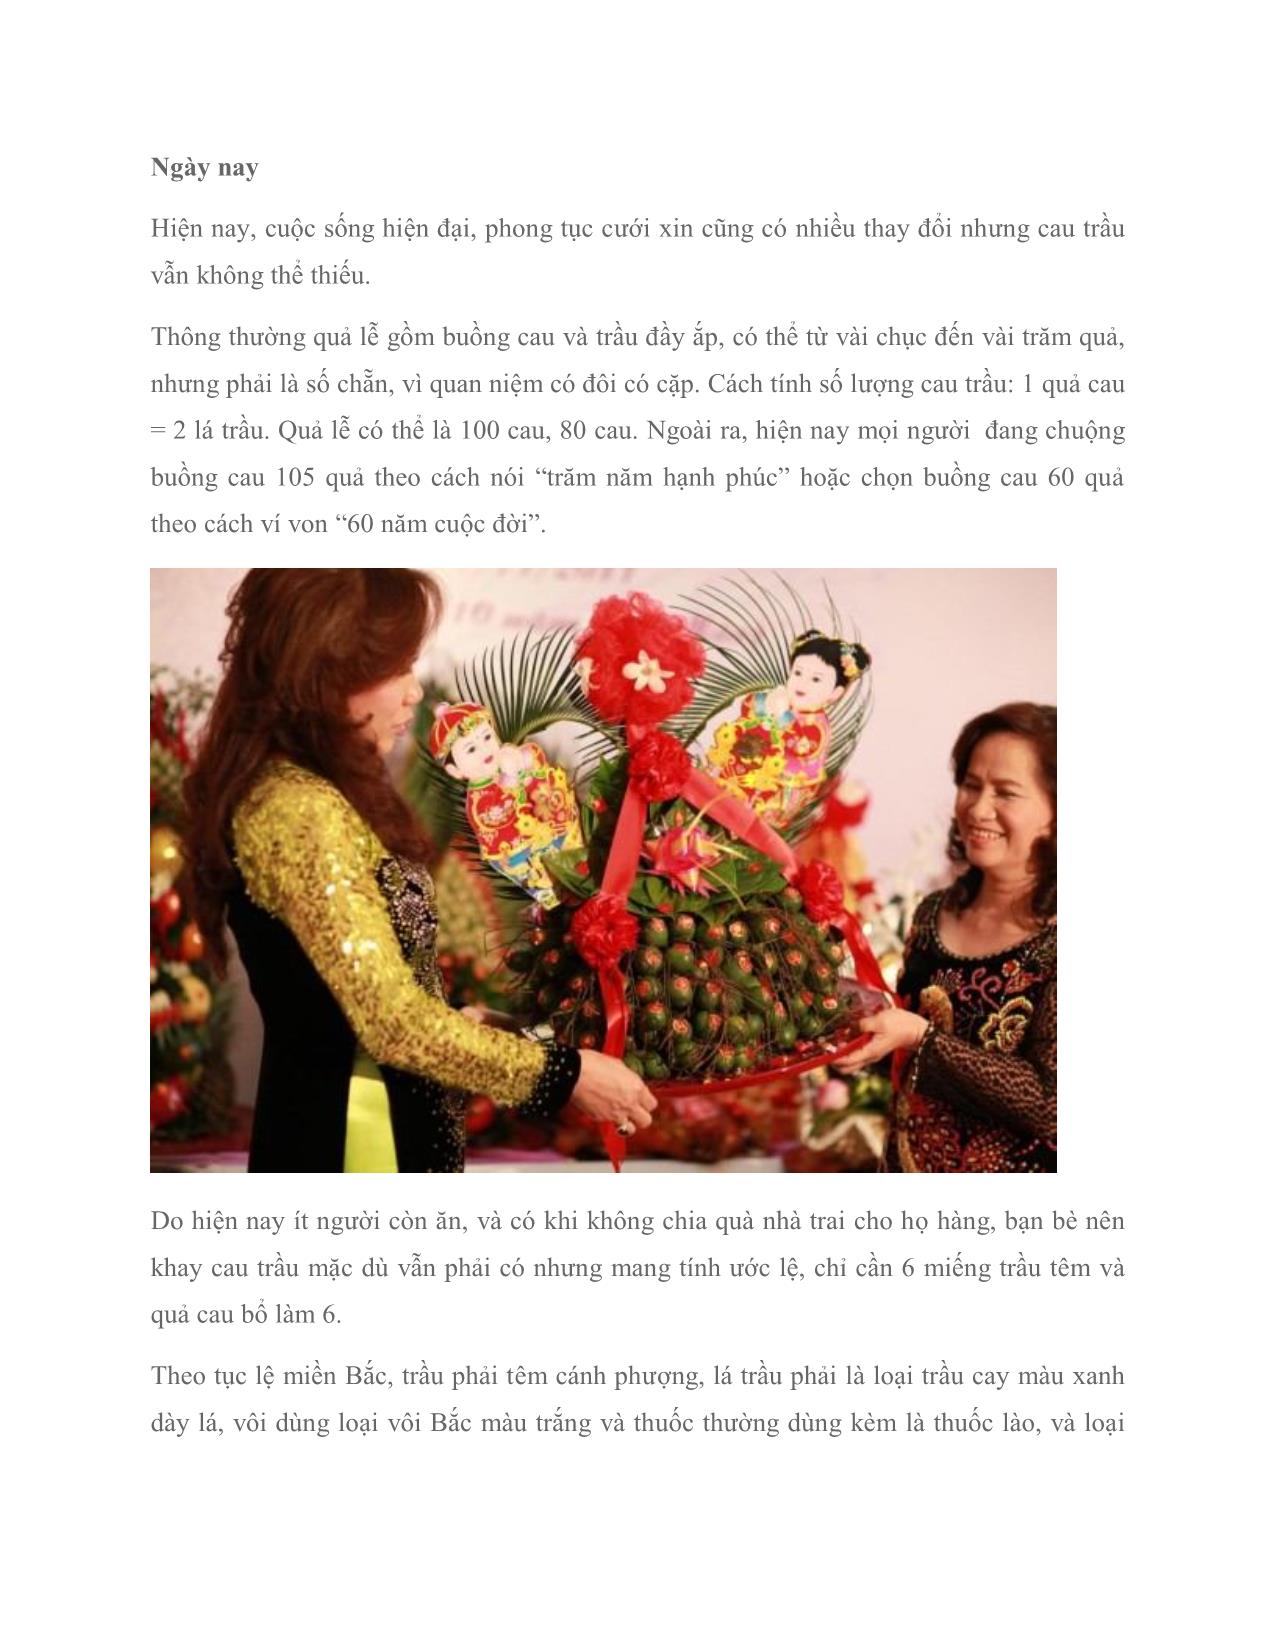 Trầu cau – lễ vật không thể thiếu trong cưới hỏi người Việt trang 4